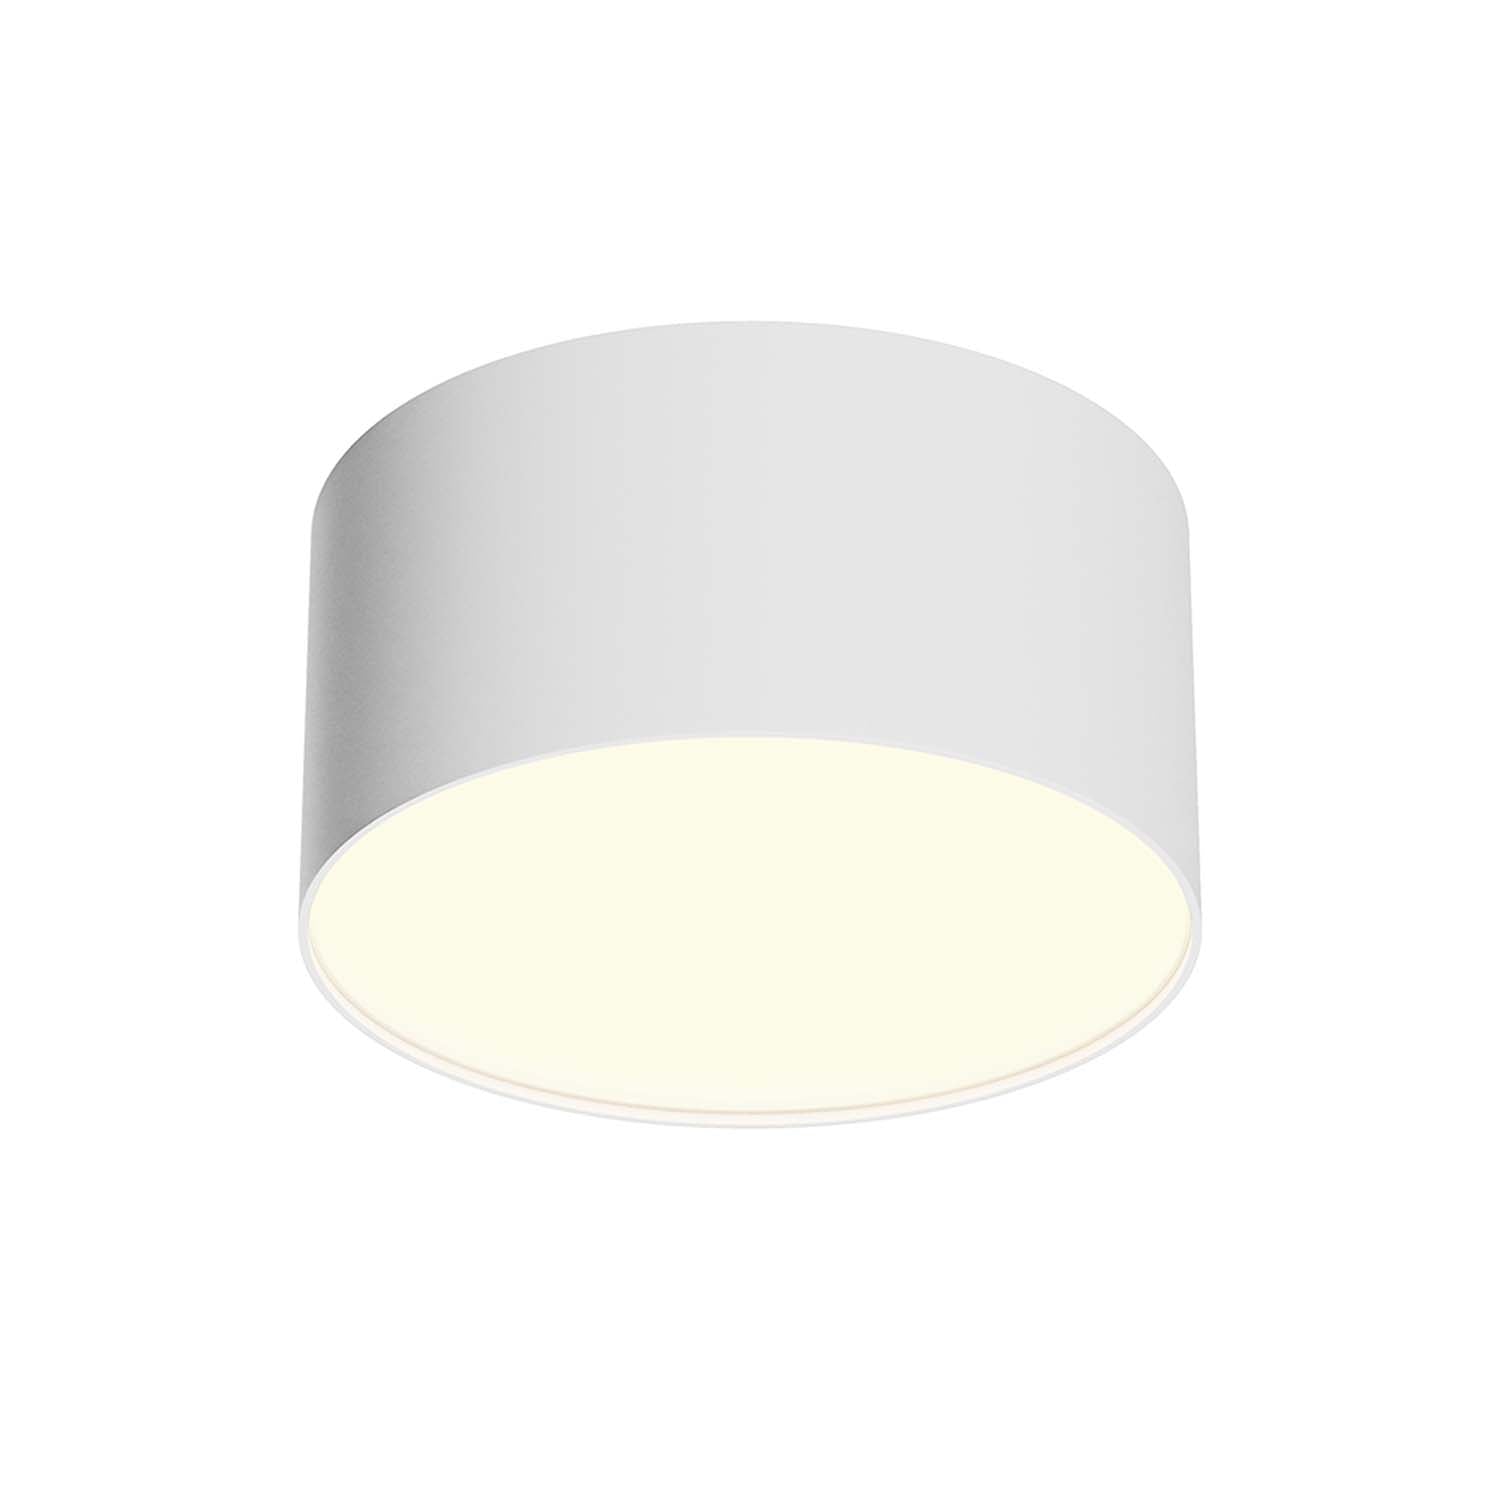 ZON – Designer- und minimalistische integrierte LED-Deckenleuchte